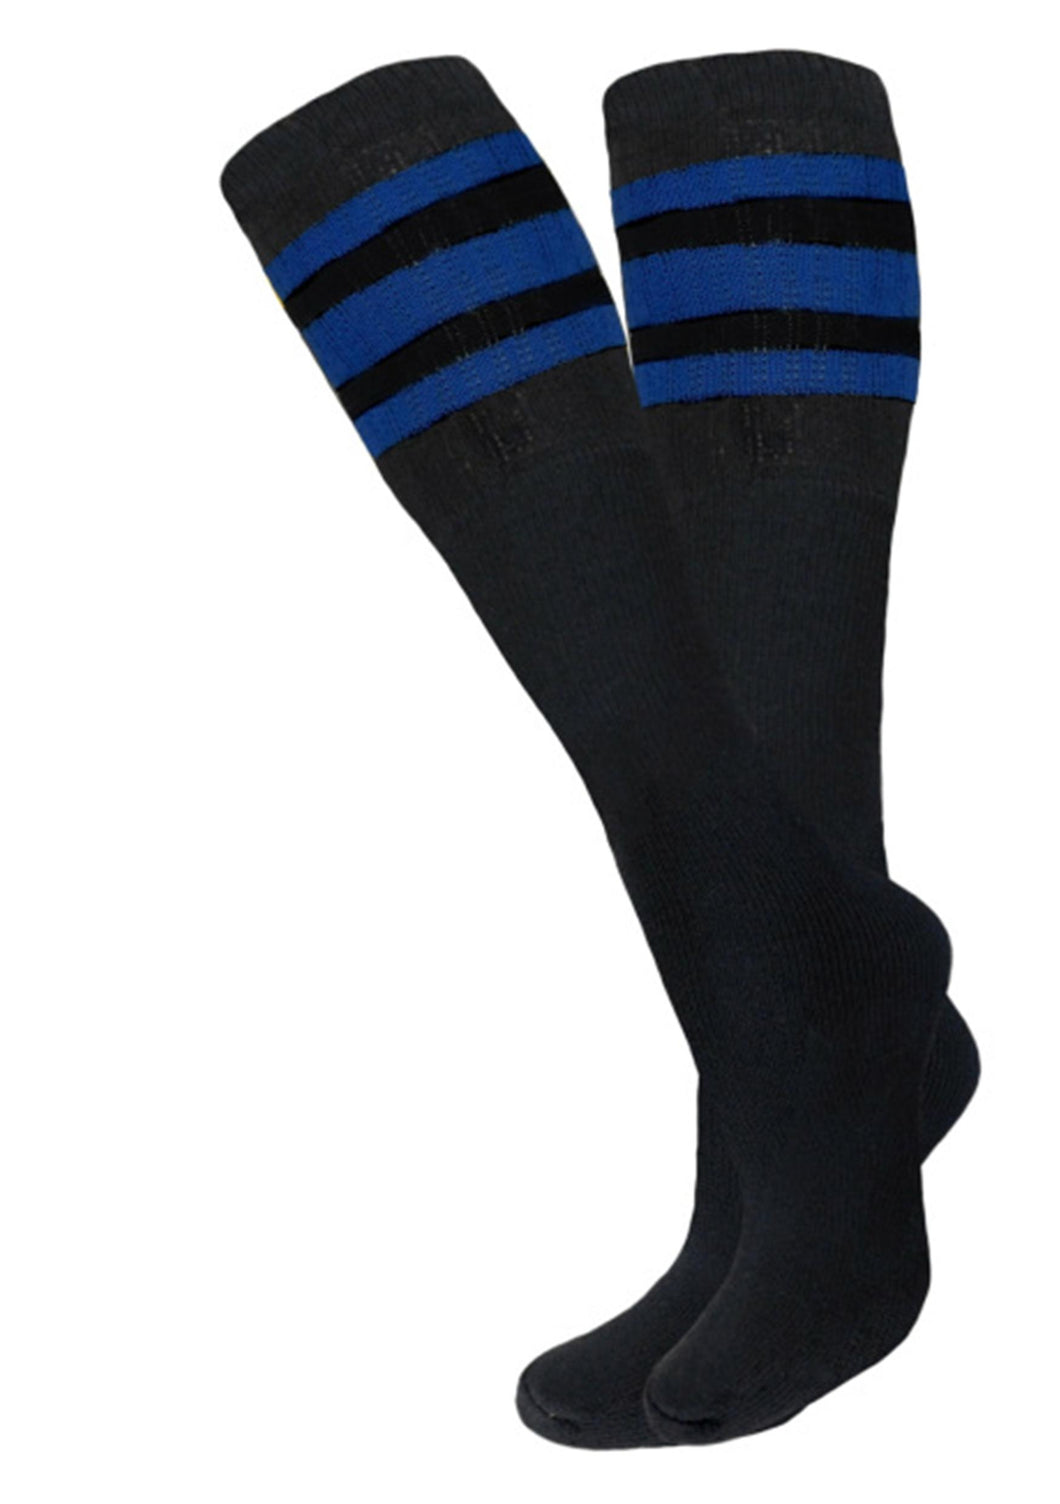 Tube Socks 3 OR 6 Pair Pack - Black Blue